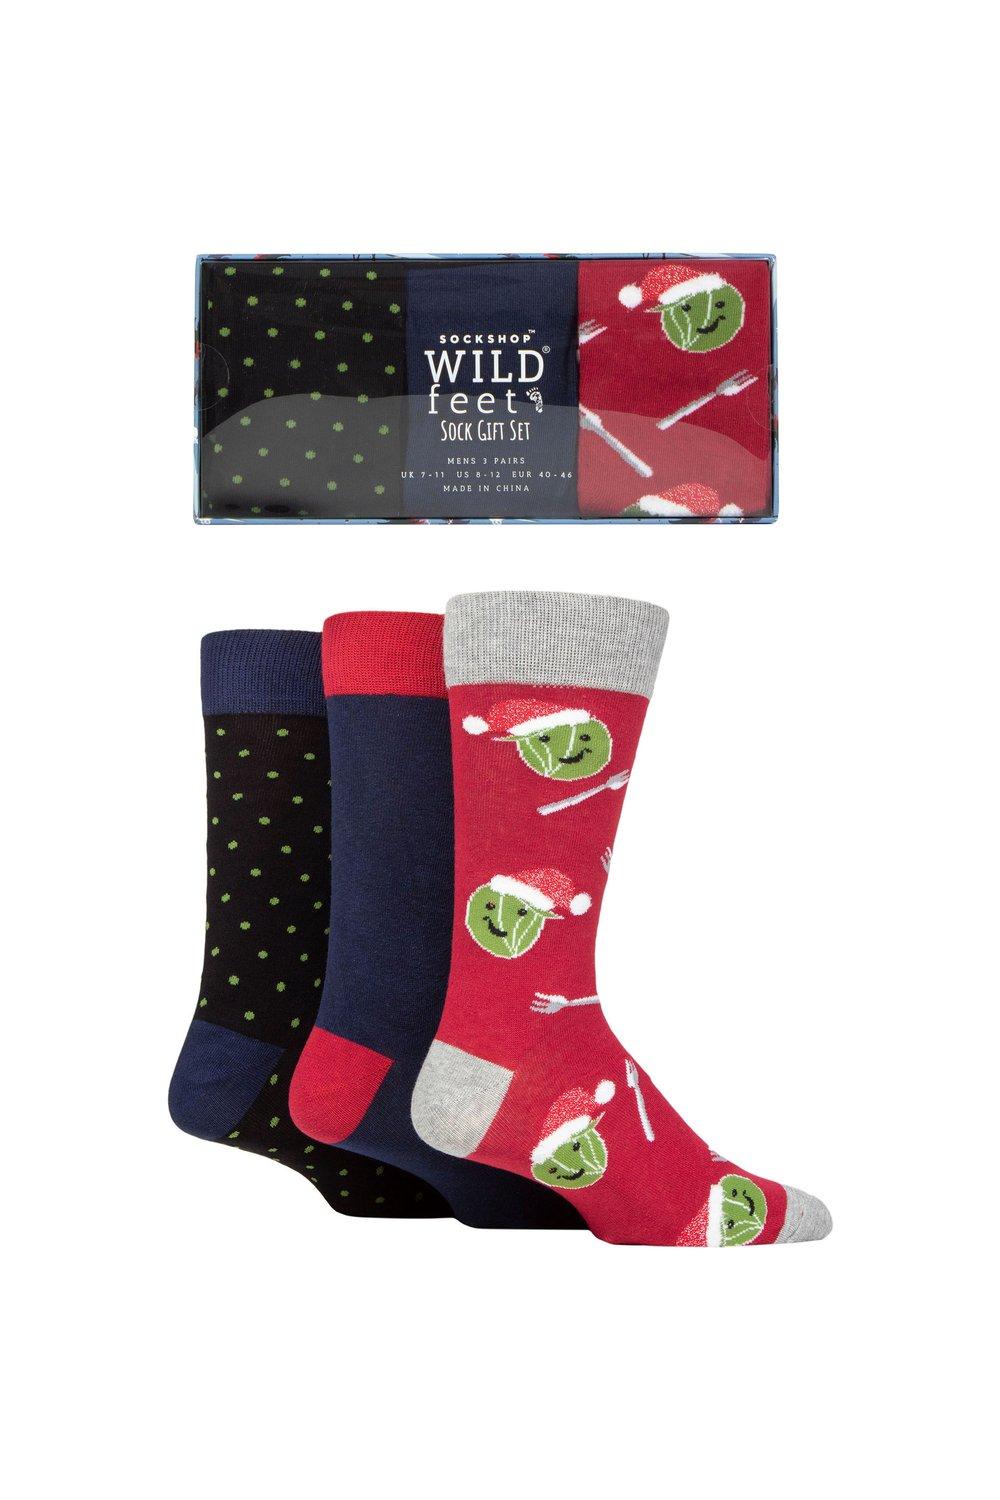 3 пары носков в подарочной упаковке winter wonderland christmas cube sockshop wild feet черный 3 пары рождественских плоских подарочных носков в упаковке SOCKSHOP Wild Feet, мультиколор